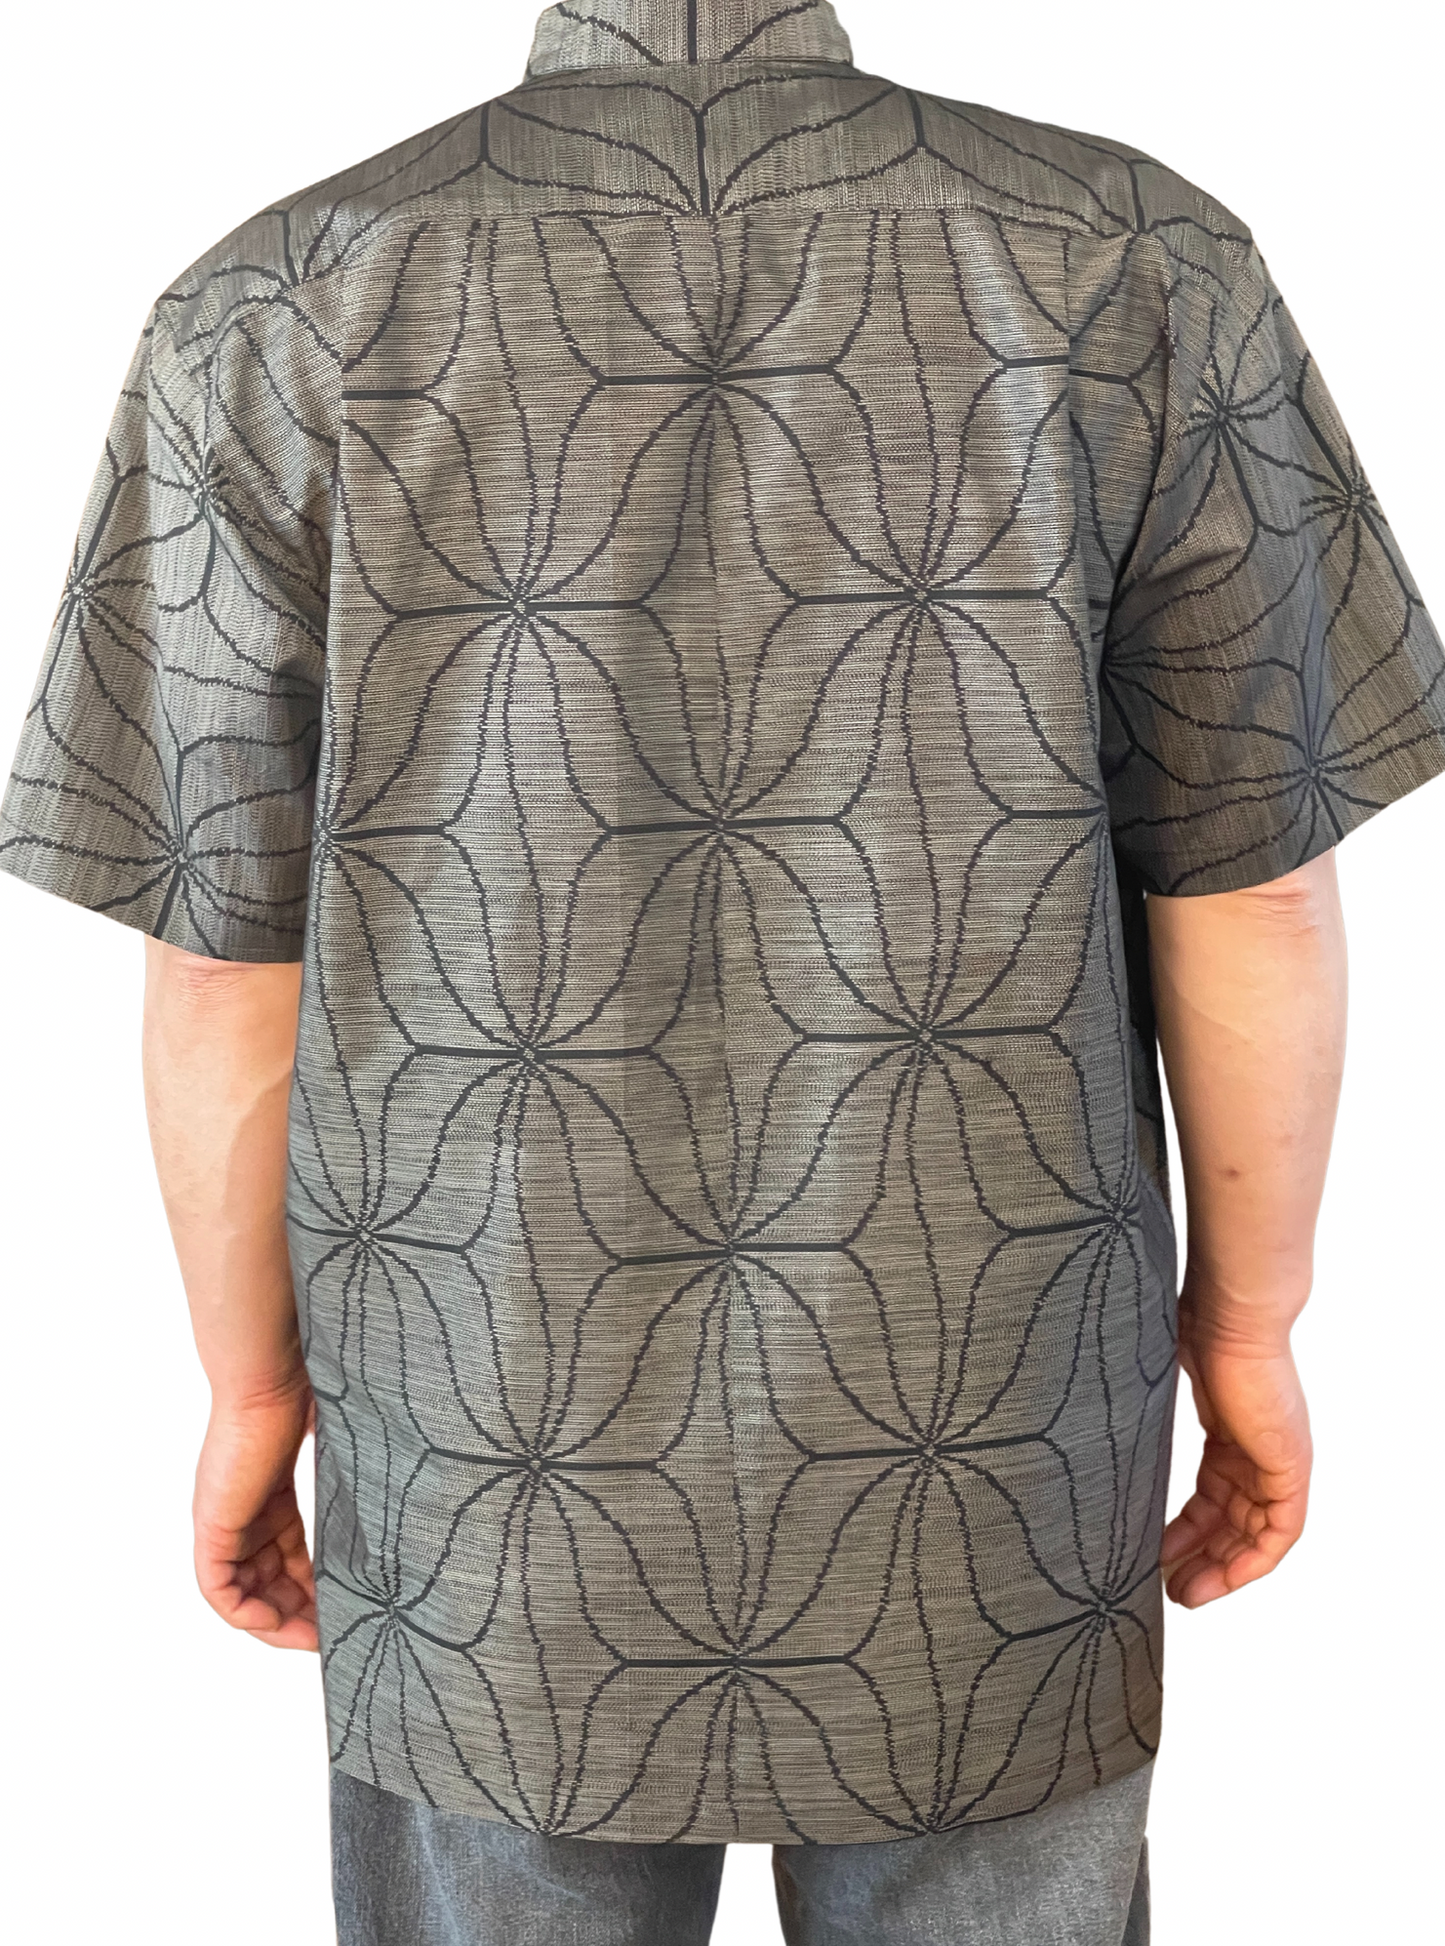 [قميص الرجال الذي يحتوي على قطعة واحدة فقط في العالم] أرقى قميص أوشيما تسوموجي عتيقة يرث الطراز الياباني